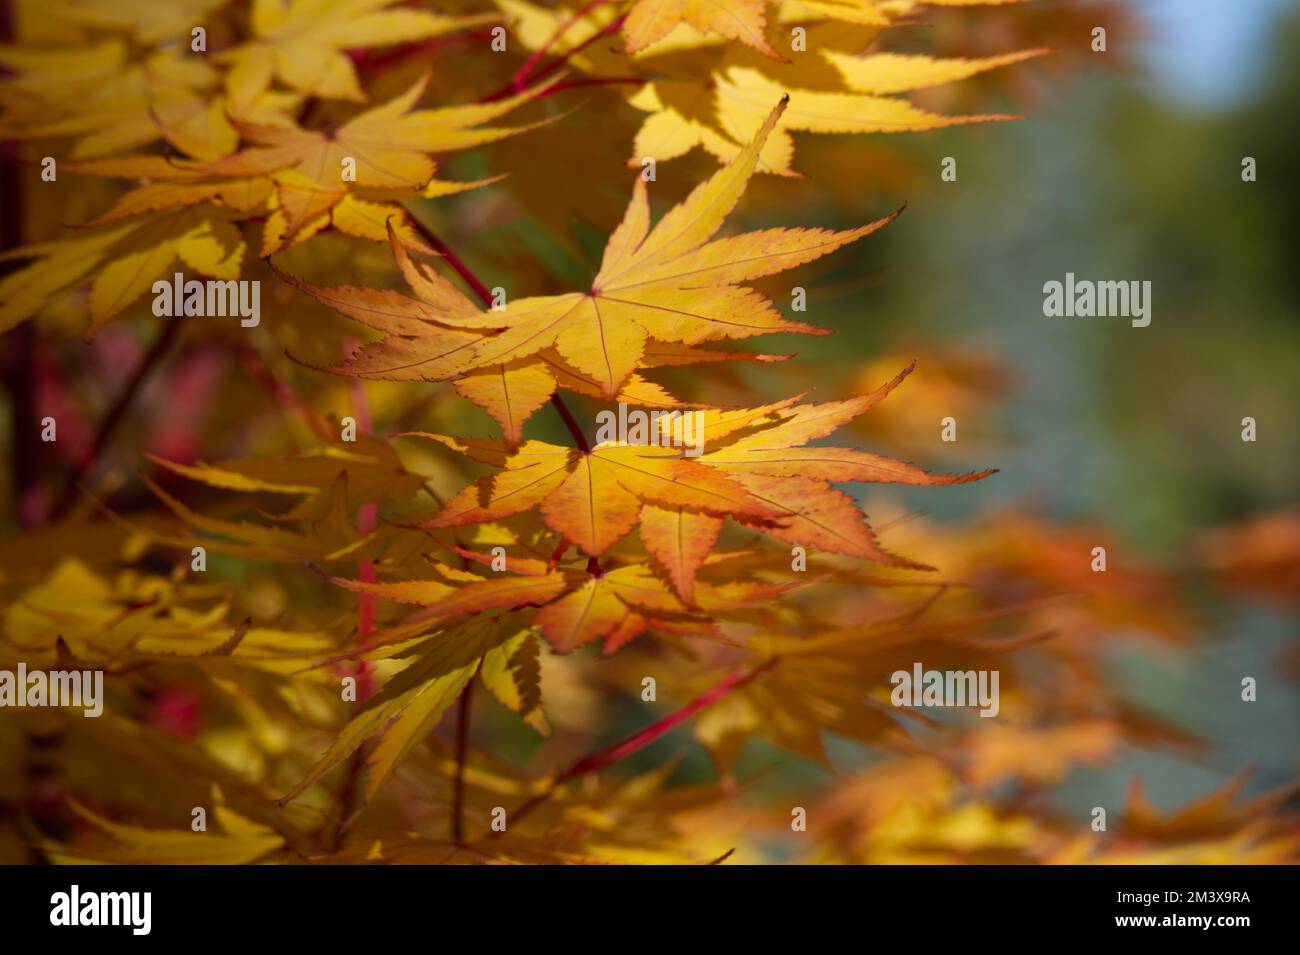 Herbstlaub von Ahorn mit Korallenrinde Acer palmatum Sango-kaku im britischen Garten Oktober Stockfoto